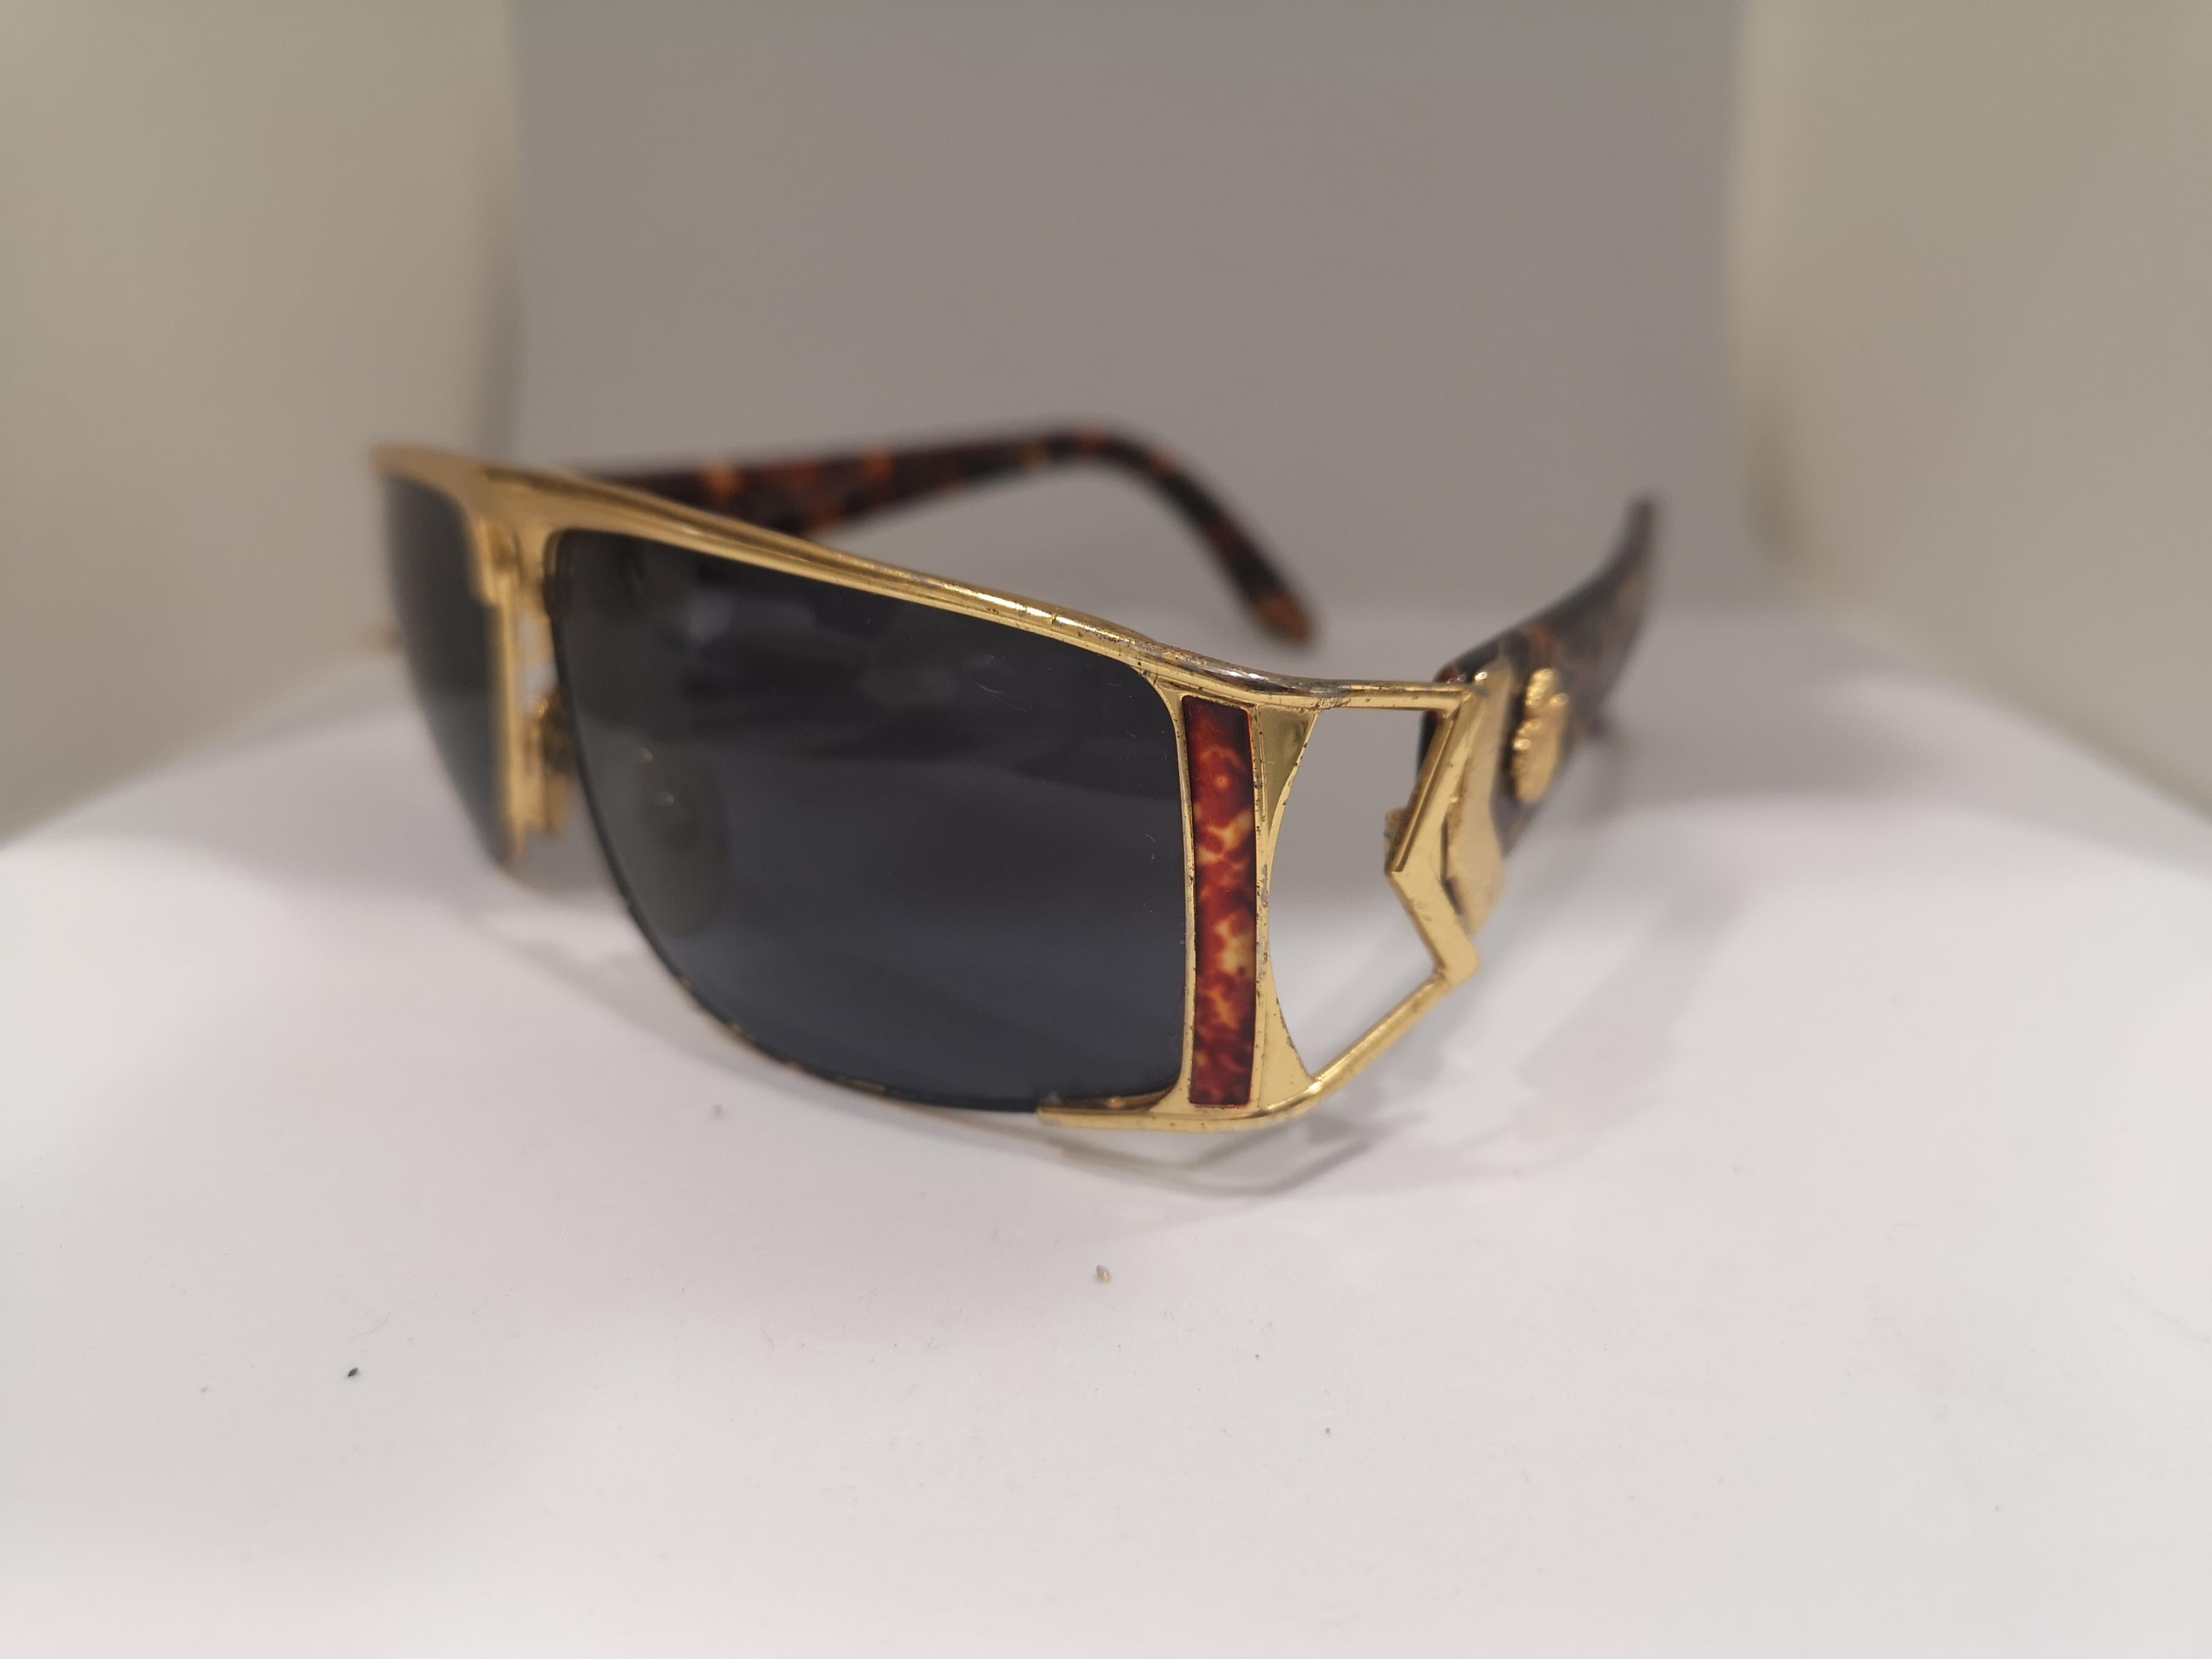 Men's Sting black lens gold tortoise sunglasses